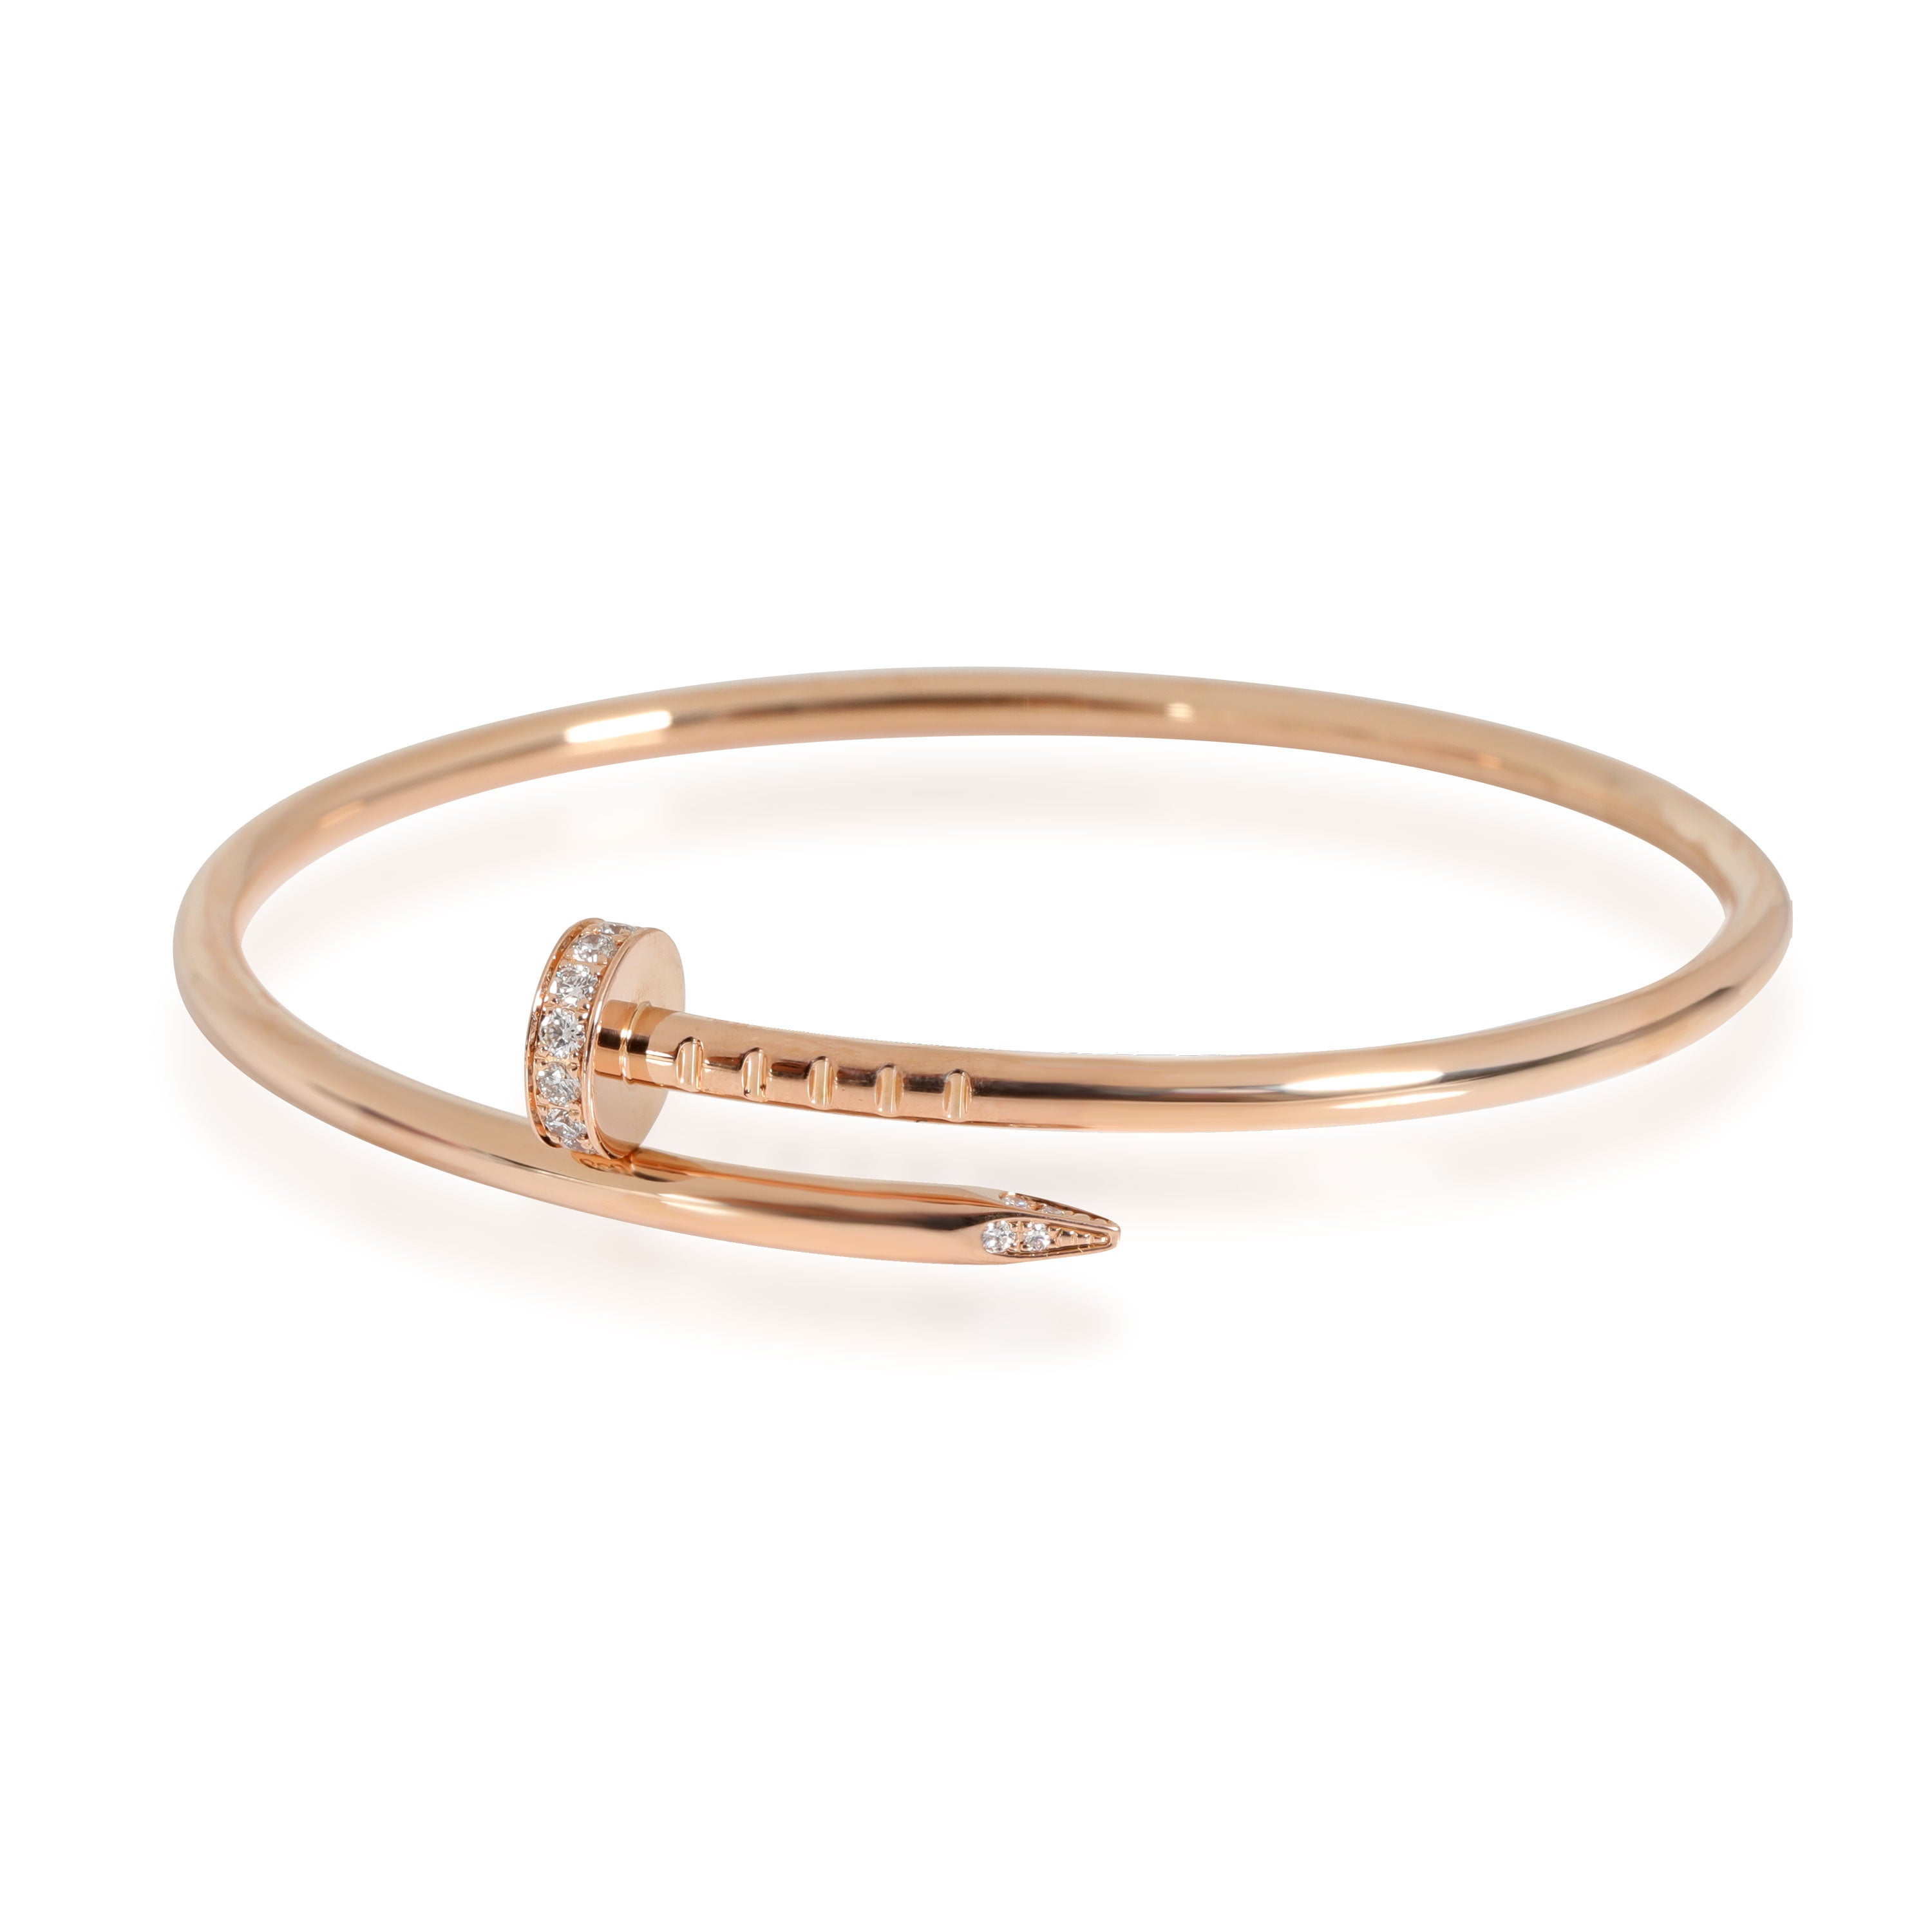 Cartier Juste Un Clou Diamond Bracelet in 18K Rose Gold 0.18 CTW | myGemma